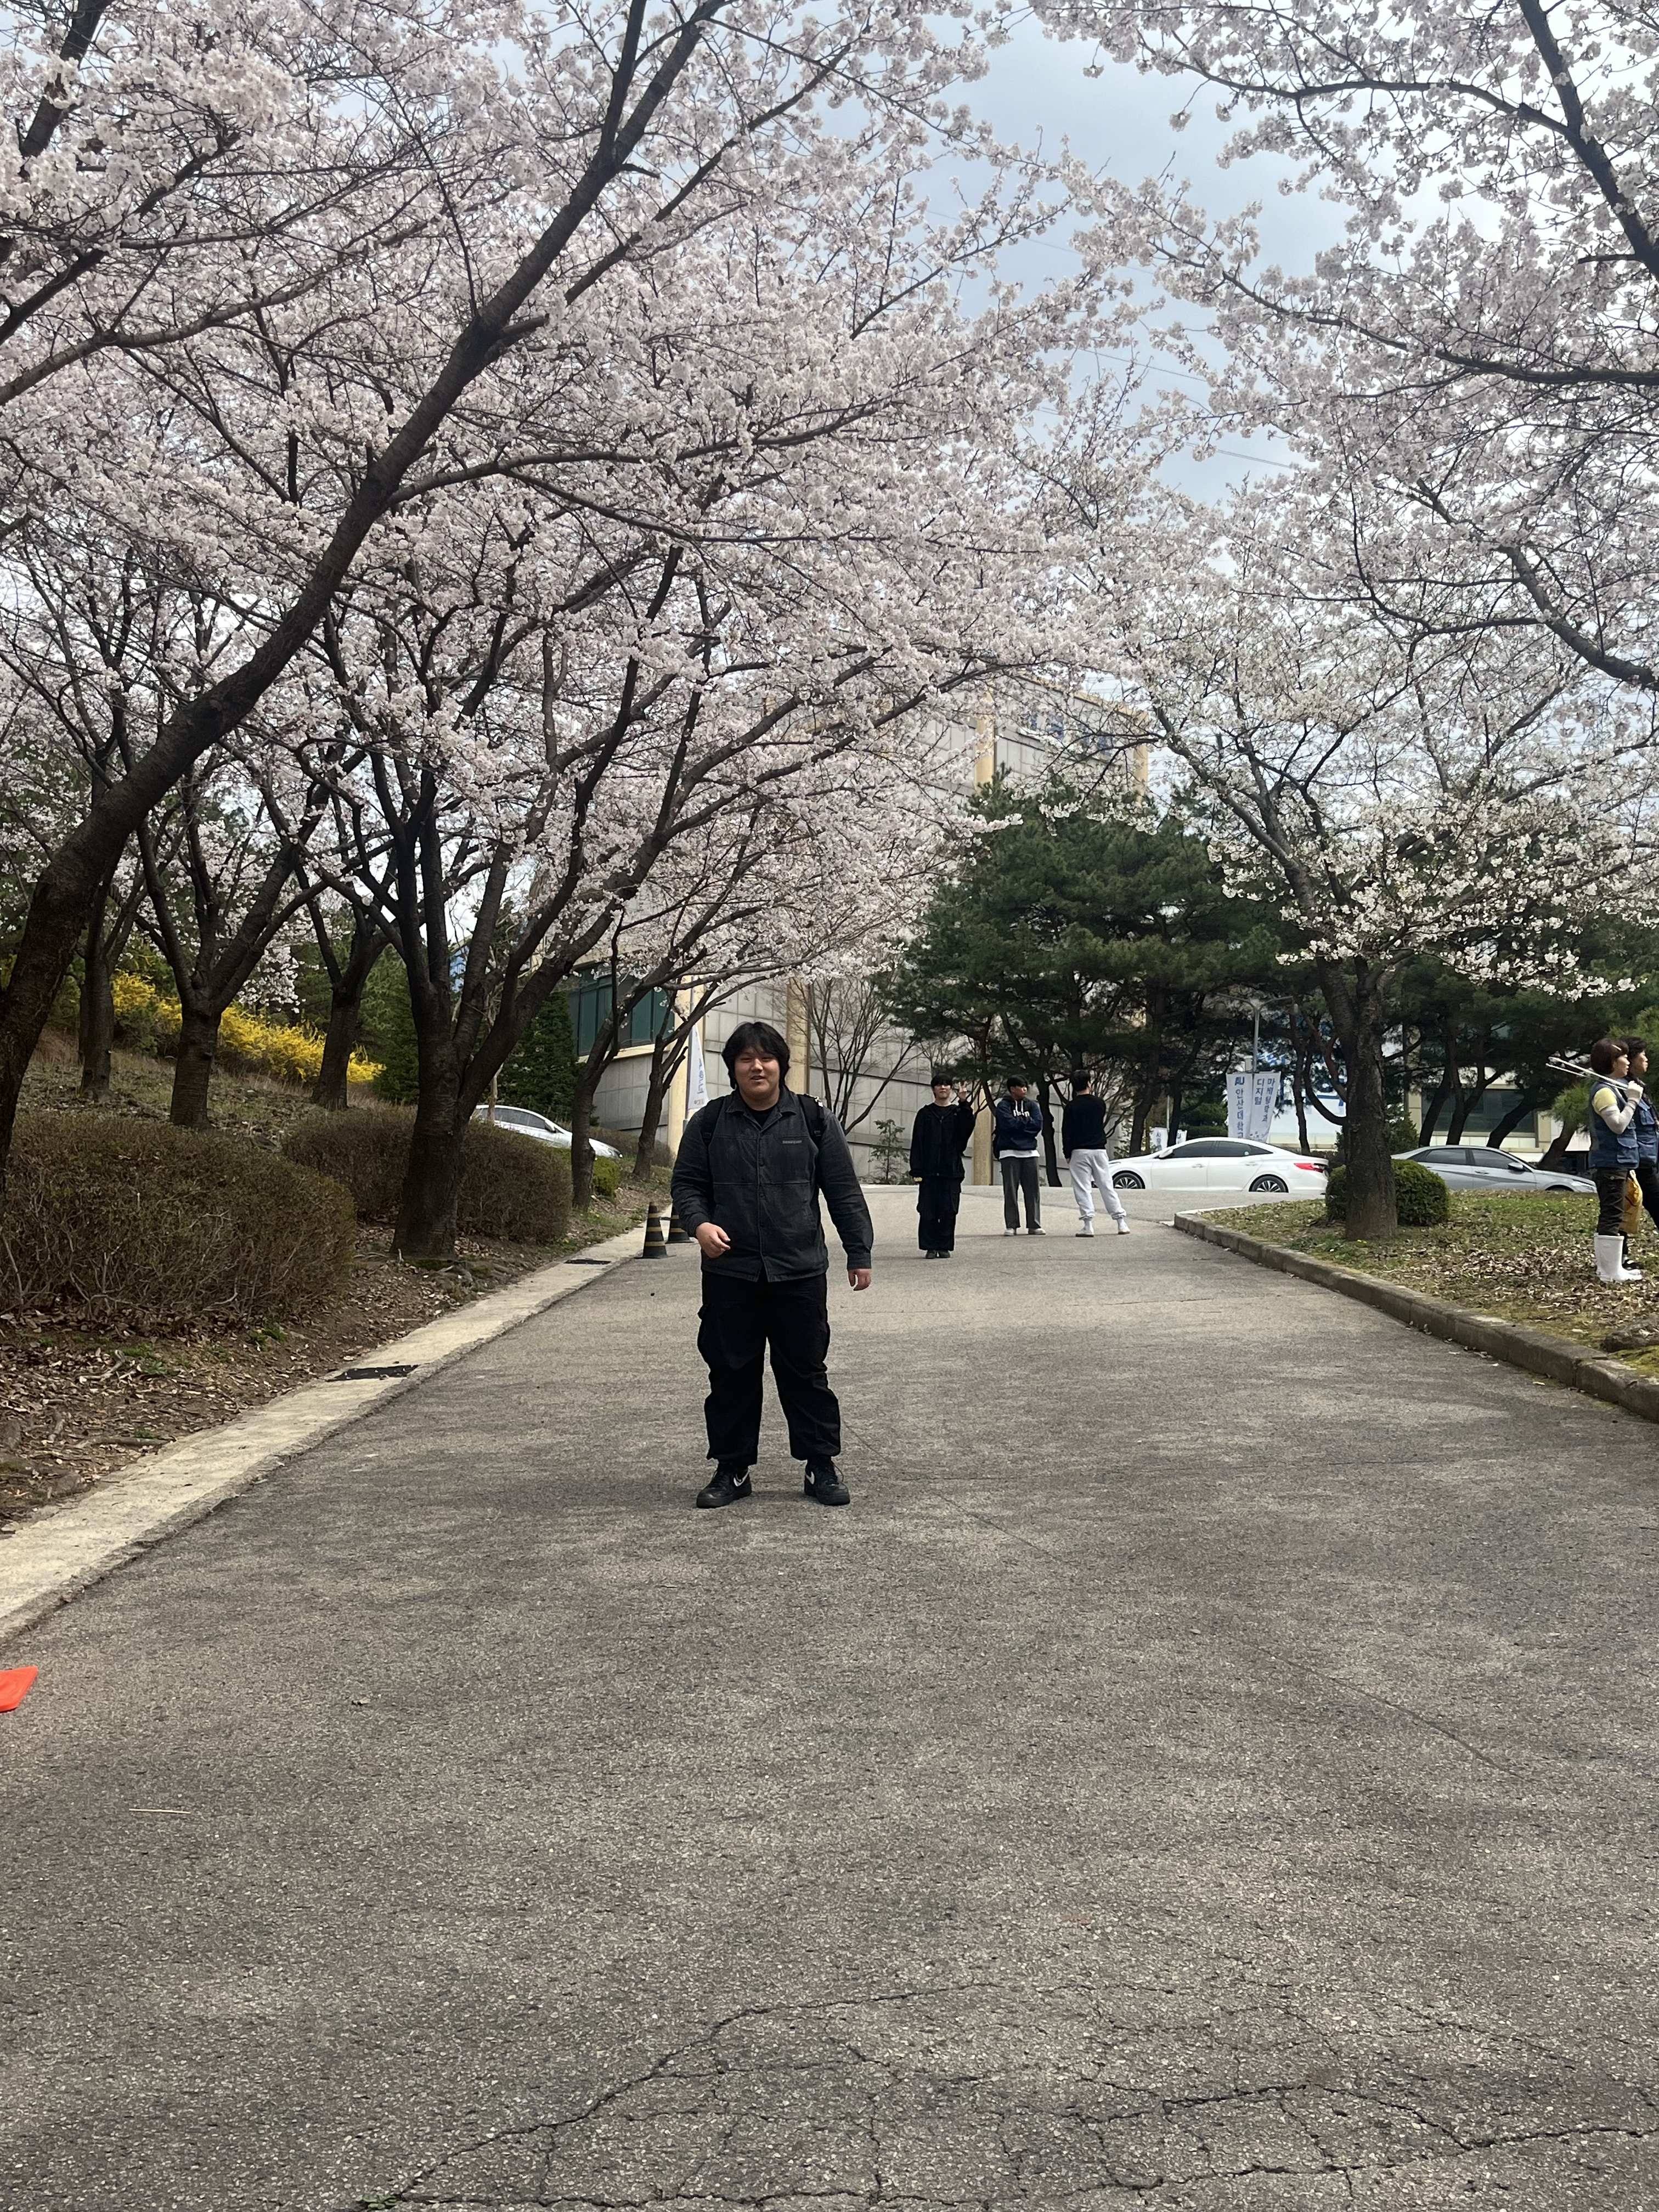 안산대학교 벚꽃 배경에 박광용이 있는 사진